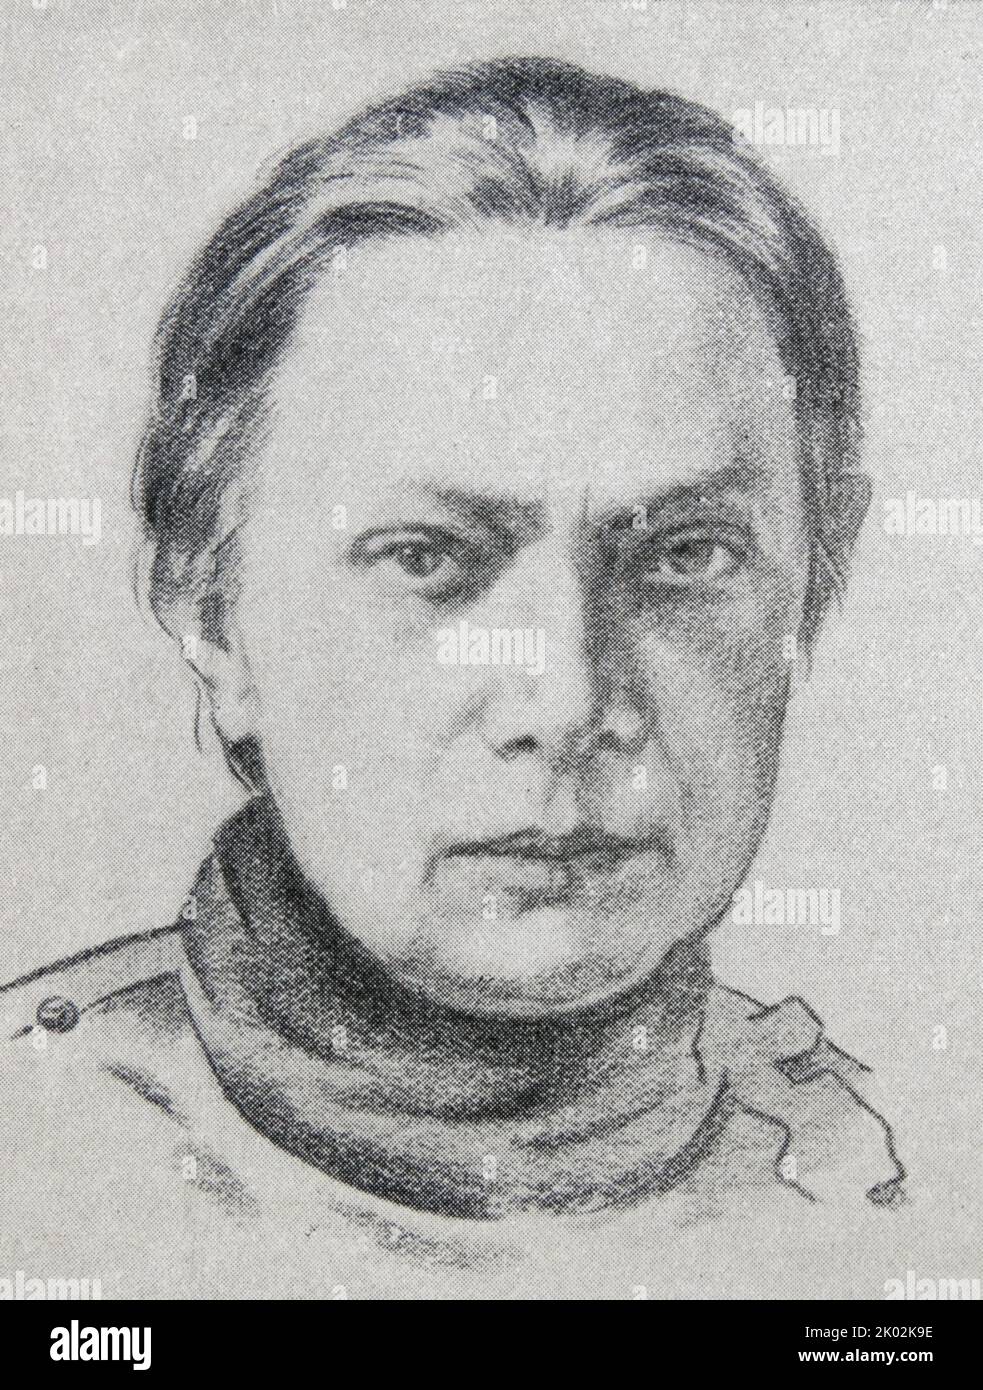 Nadeschda Konstantinowna Krupskaja (1869 - 1939), die russische Bolschewiki und die Frau Wladimir Lenins. Stockfoto